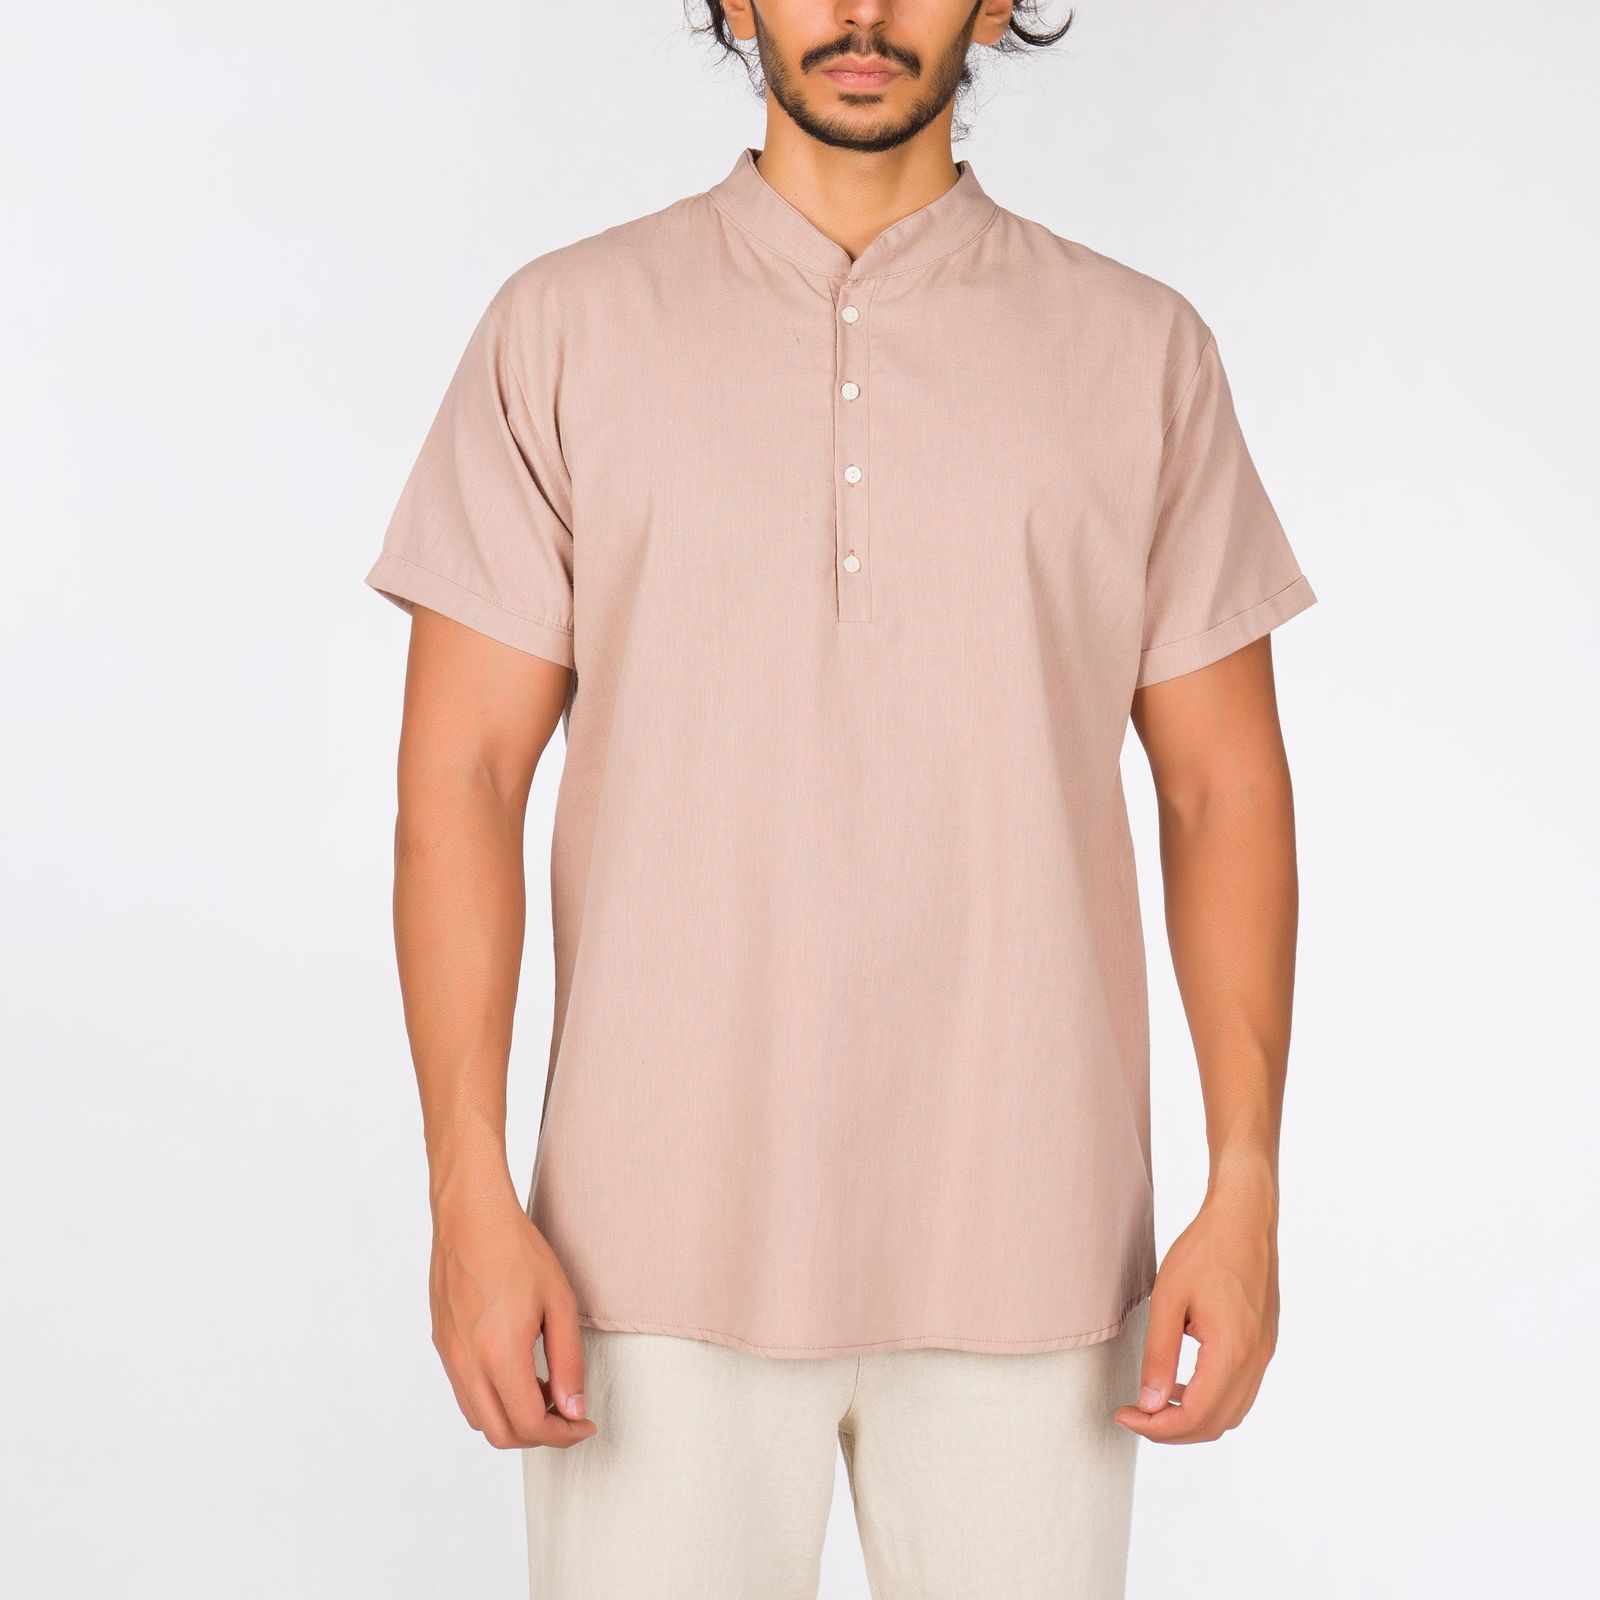 پیراهن آستین کوتاه مردانه افراتین مدل لینن رنگ نسکافه ای -  - 1